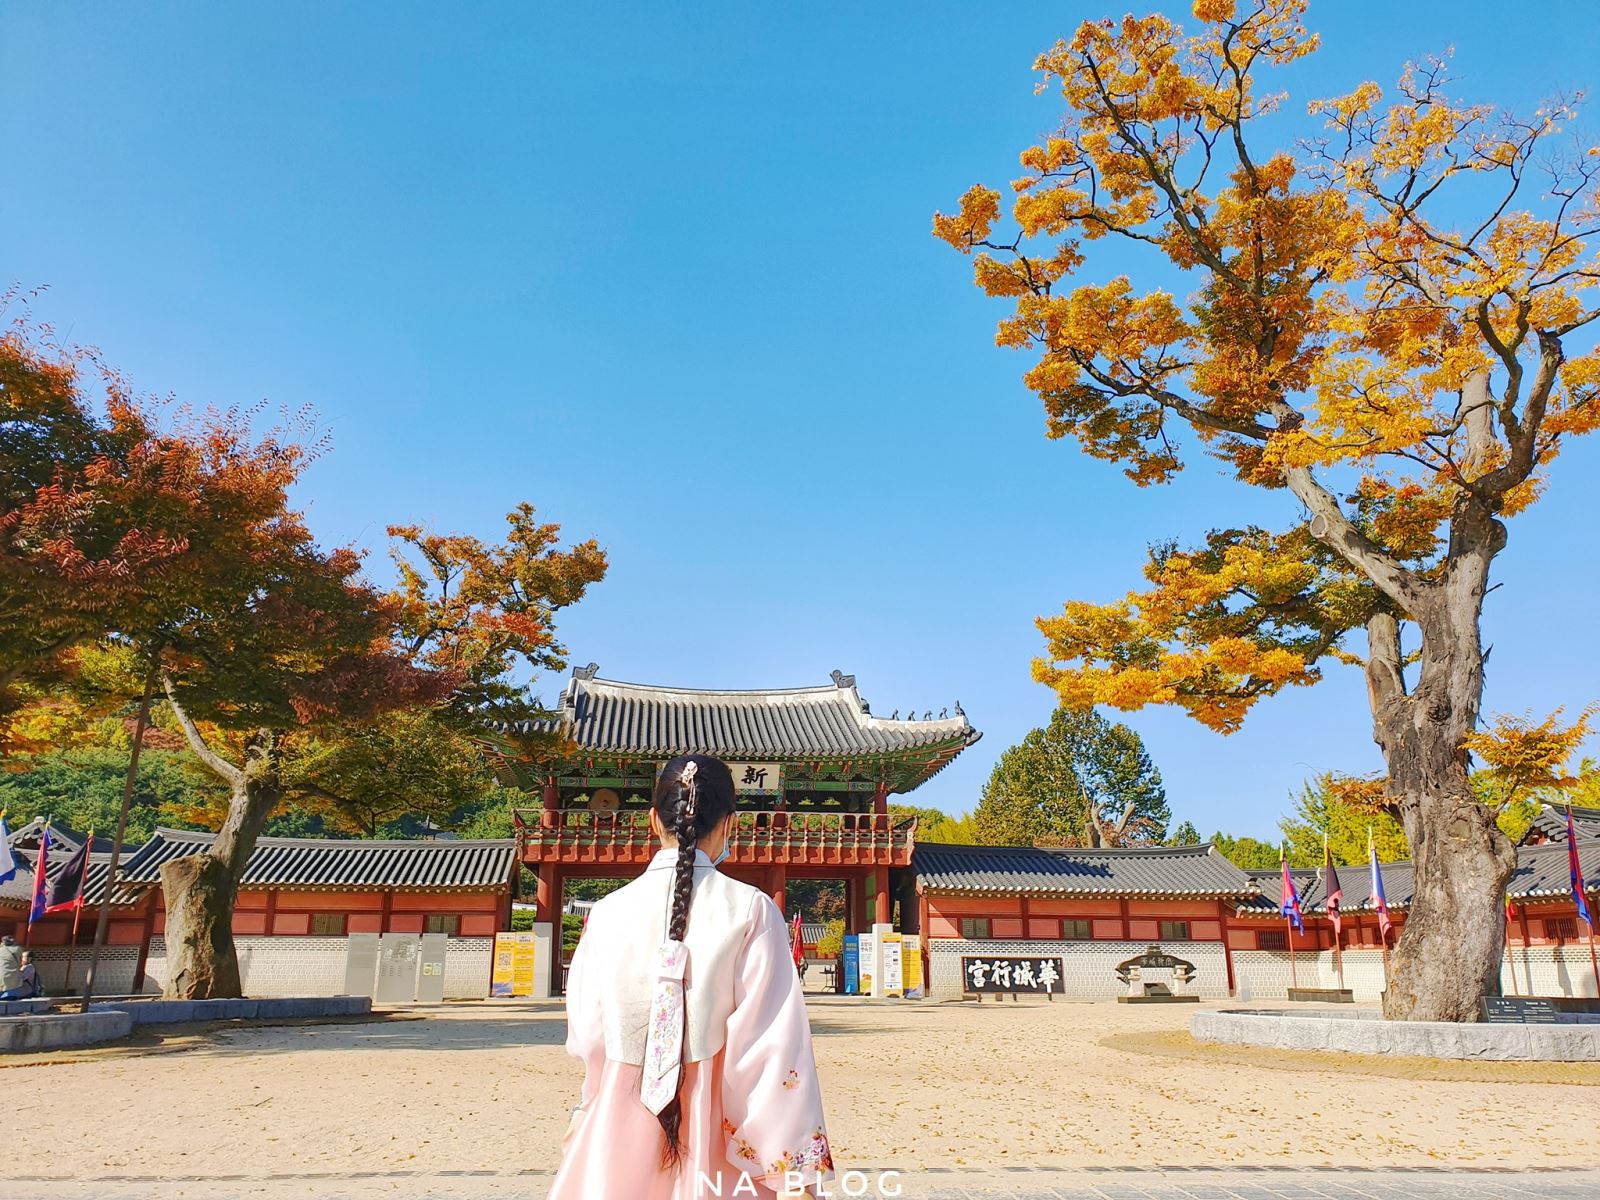 Hành cung Hwaseong có cảnh cực đẹp vào mùa thu